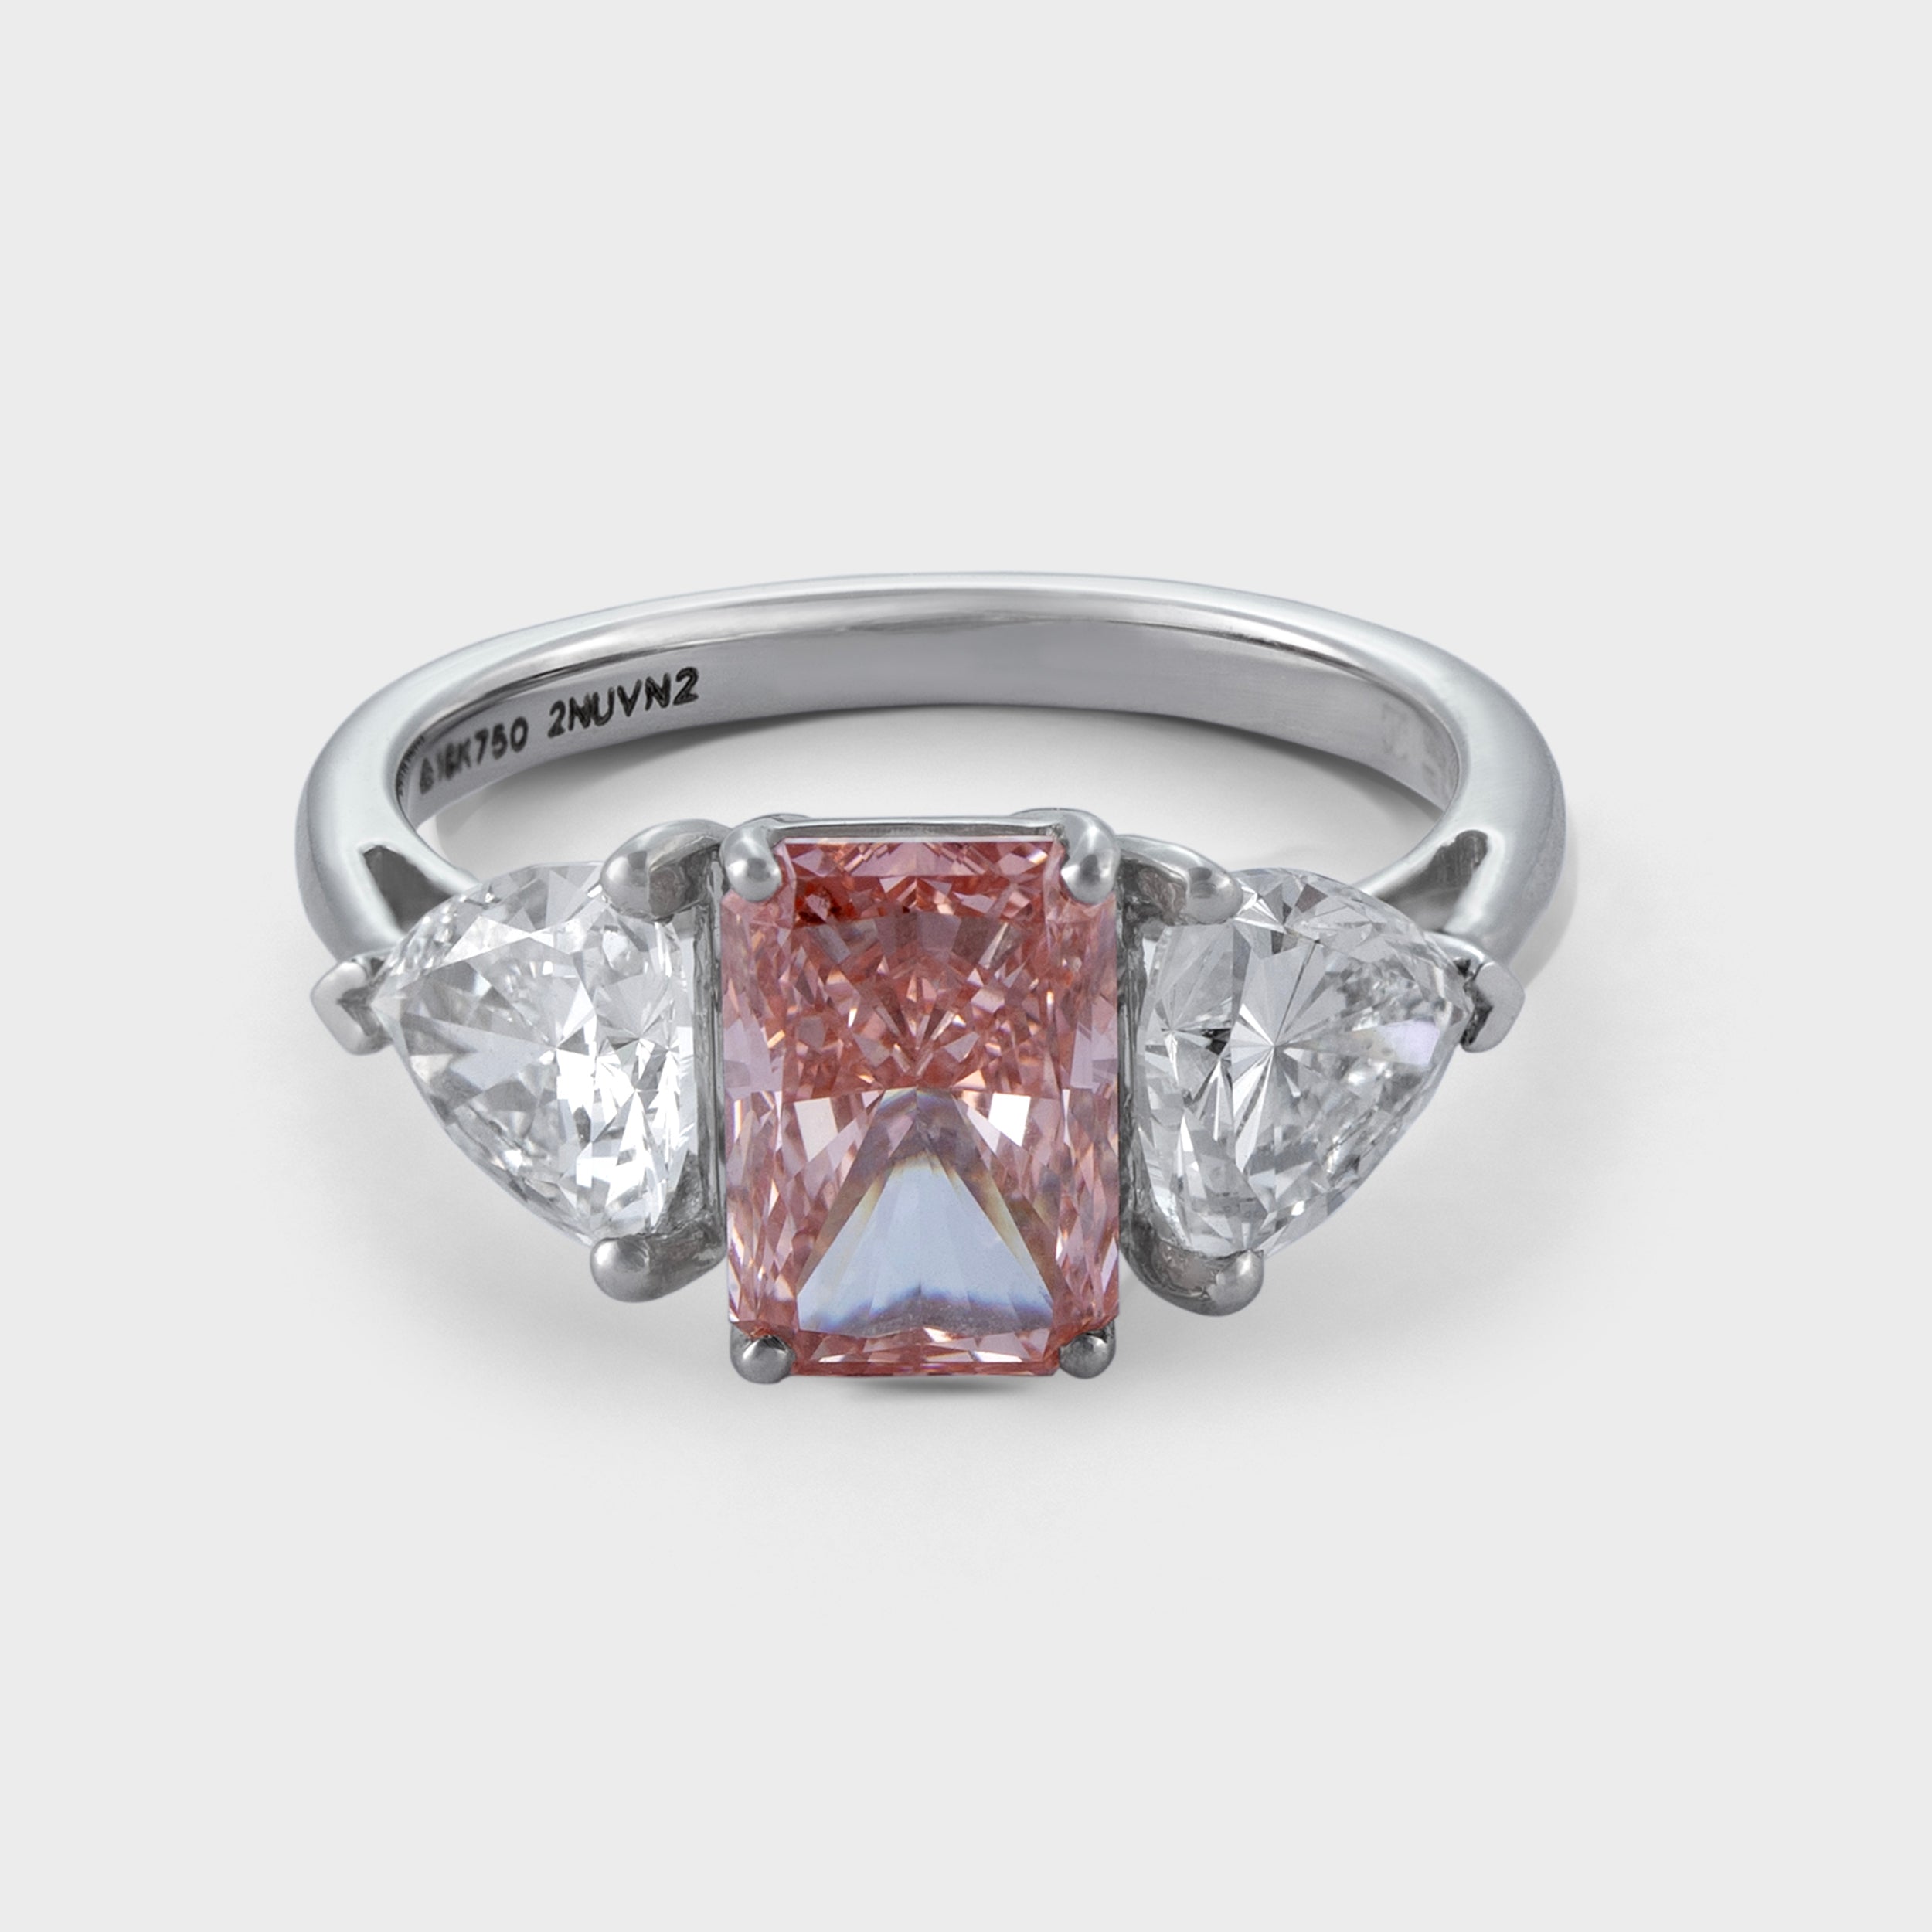 Fancy Pink Radiant & Uncut 1.60 Carat & 1.44 Carat Lab-Grown Diamond Ring | SKU : 0019463285